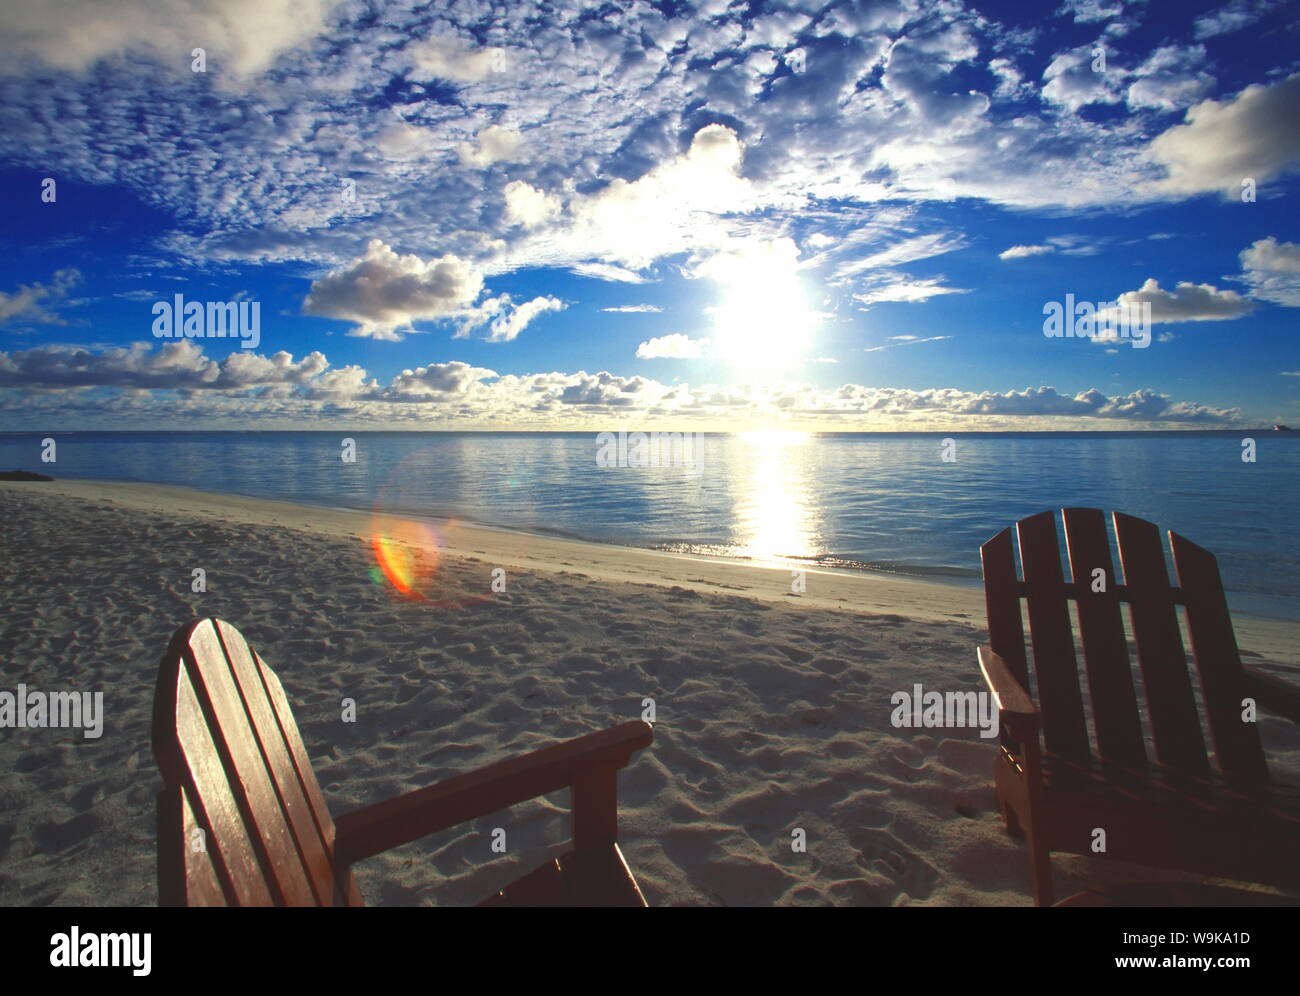 Zwei Liegestühle am Strand bei Sonnenuntergang, Malediven, Indischer Ozean, Asien Stockfoto